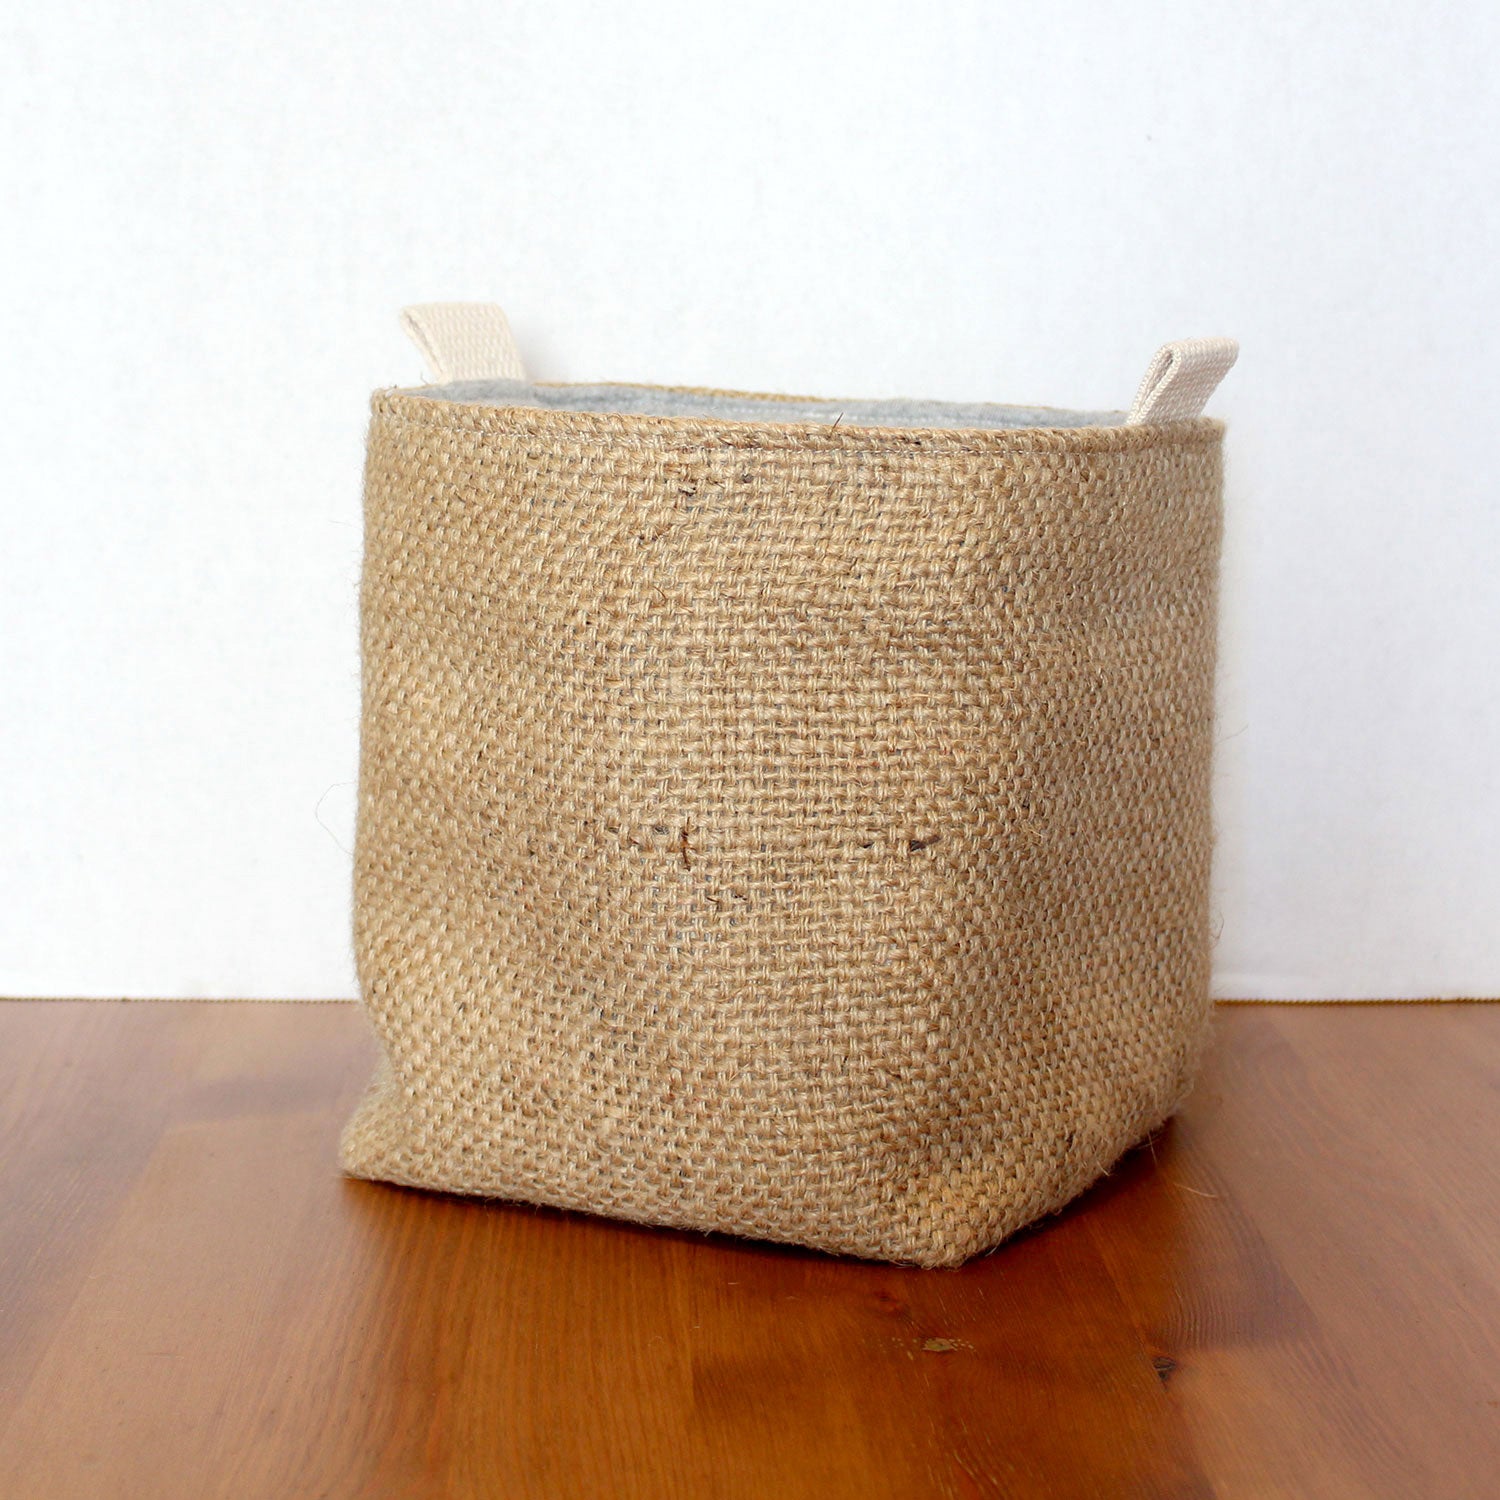 Upcycled Coffee Sack Basket - Medium - plain